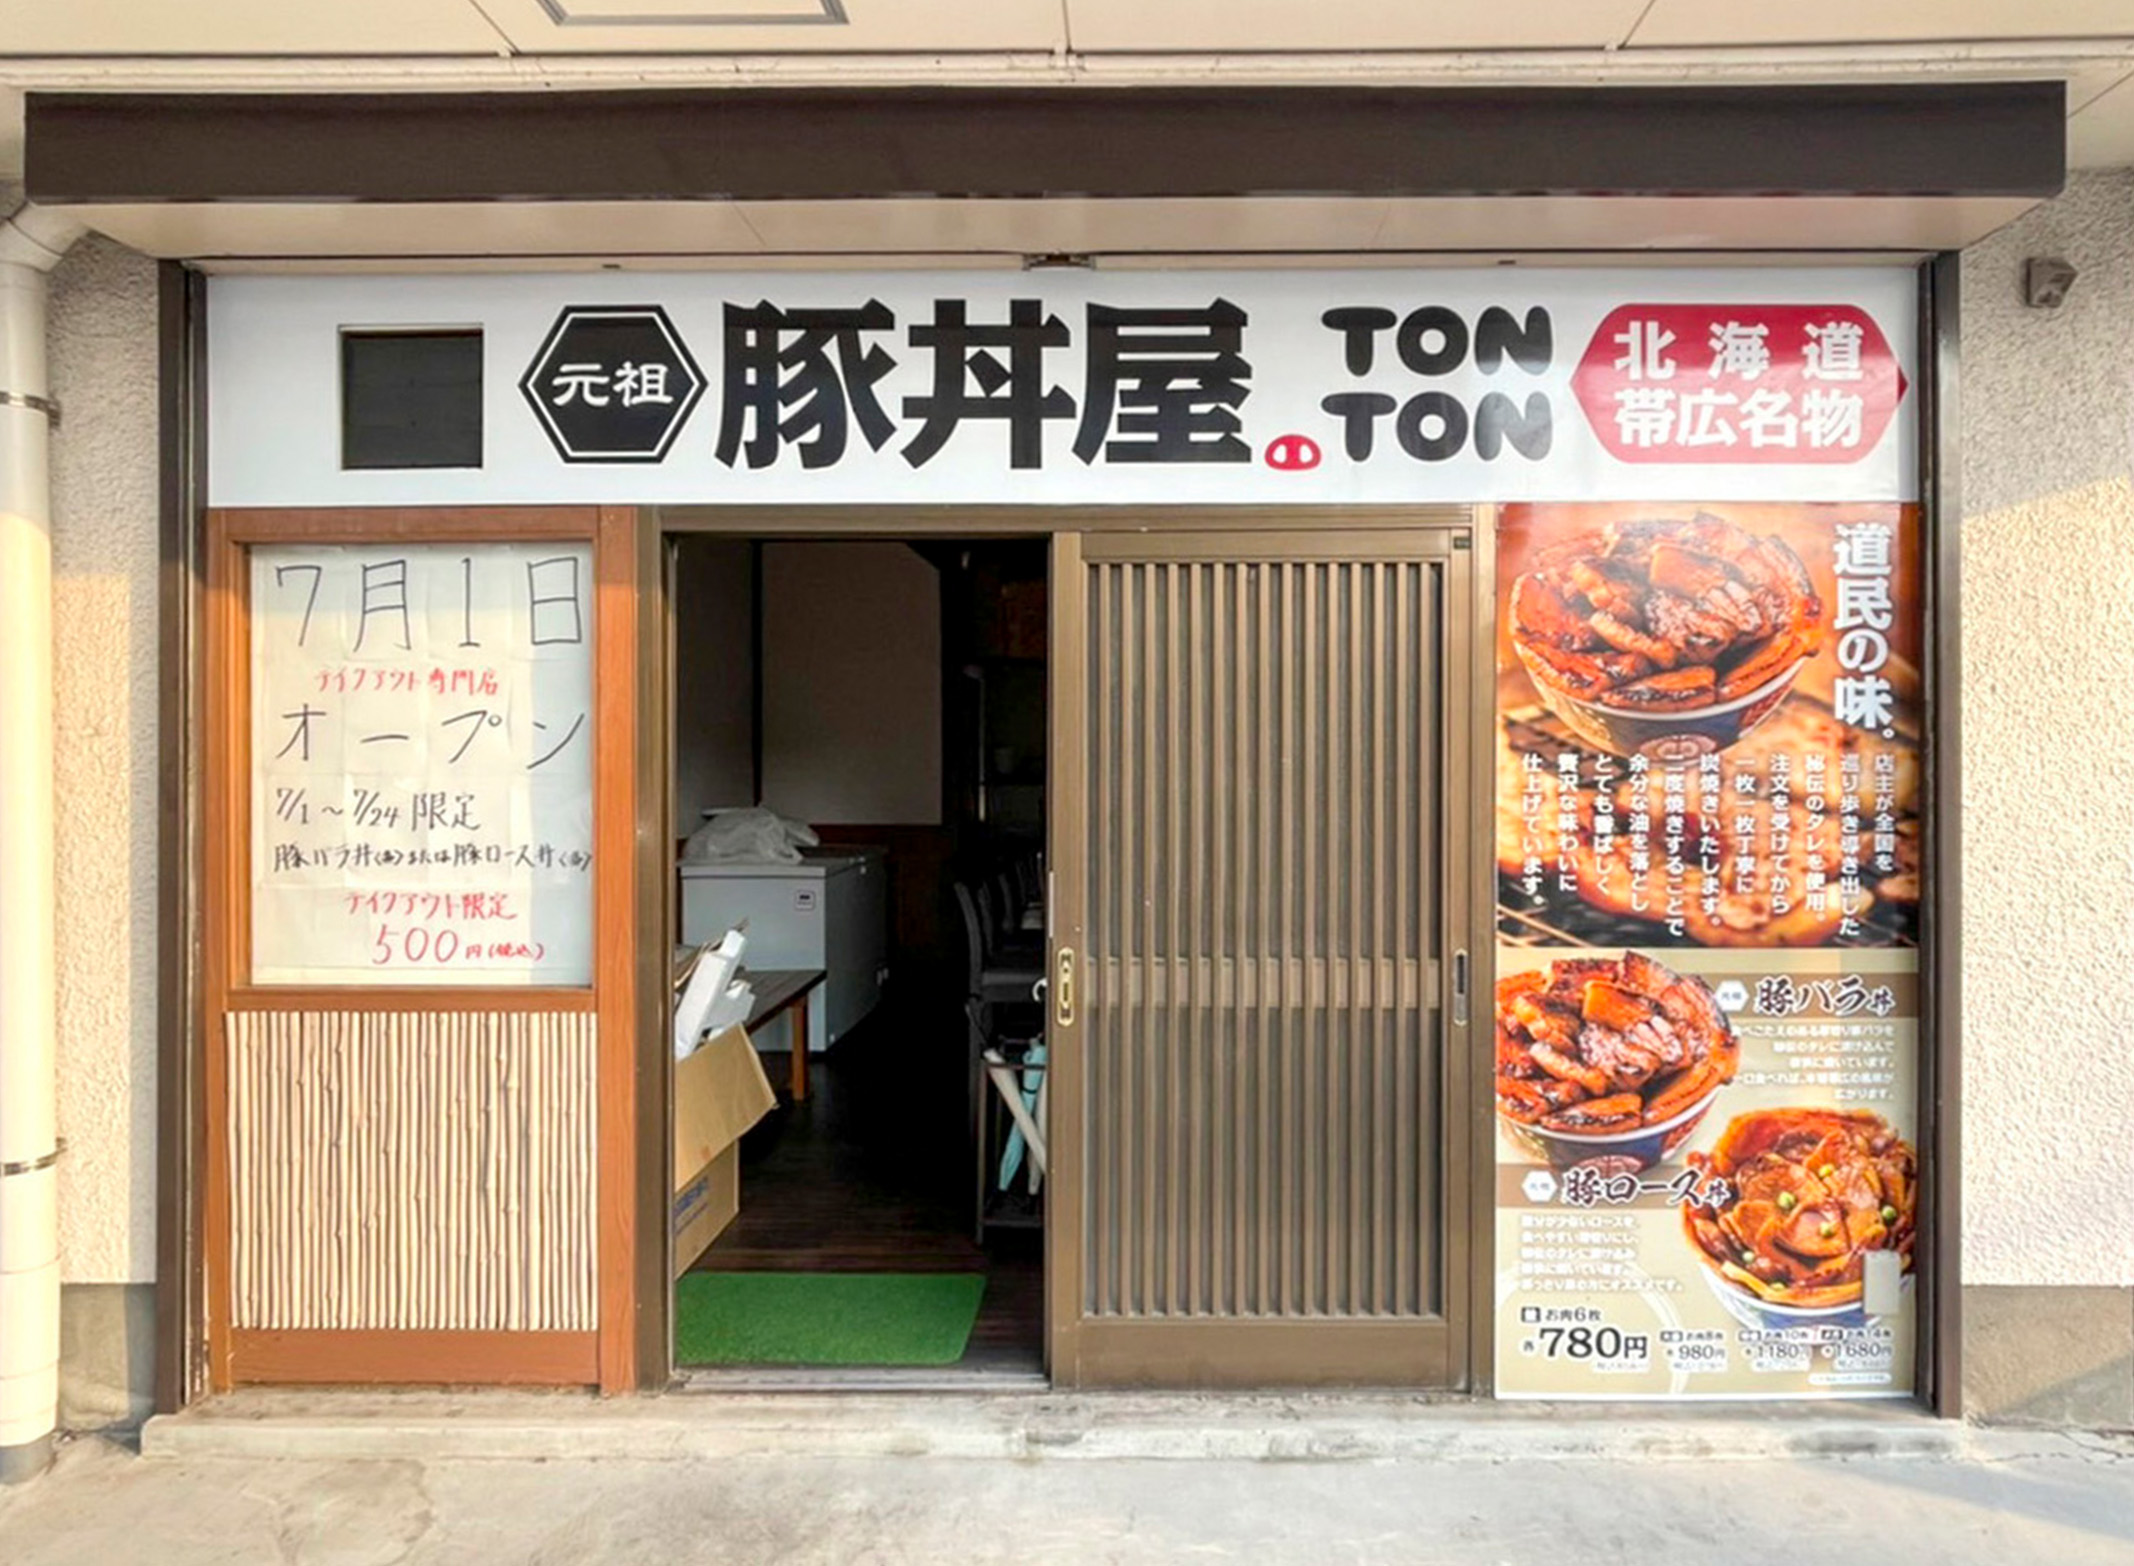 元祖豚丼屋TONTON 足立店